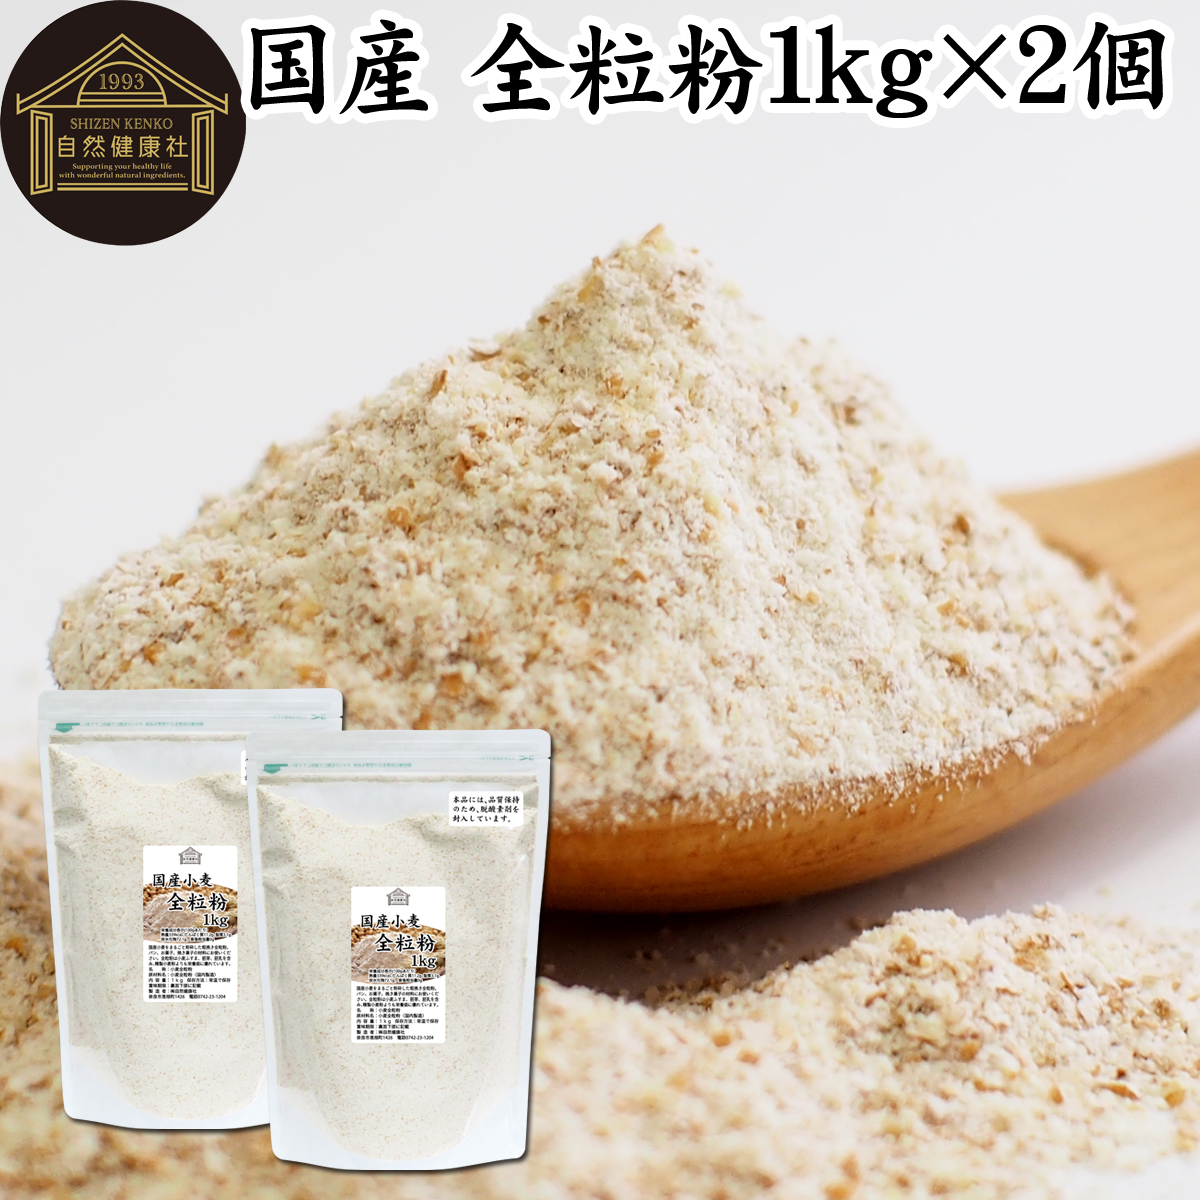 自然健康社 自然健康社 国産小麦 全粒粉 1kg×2個 全粒粉の商品画像